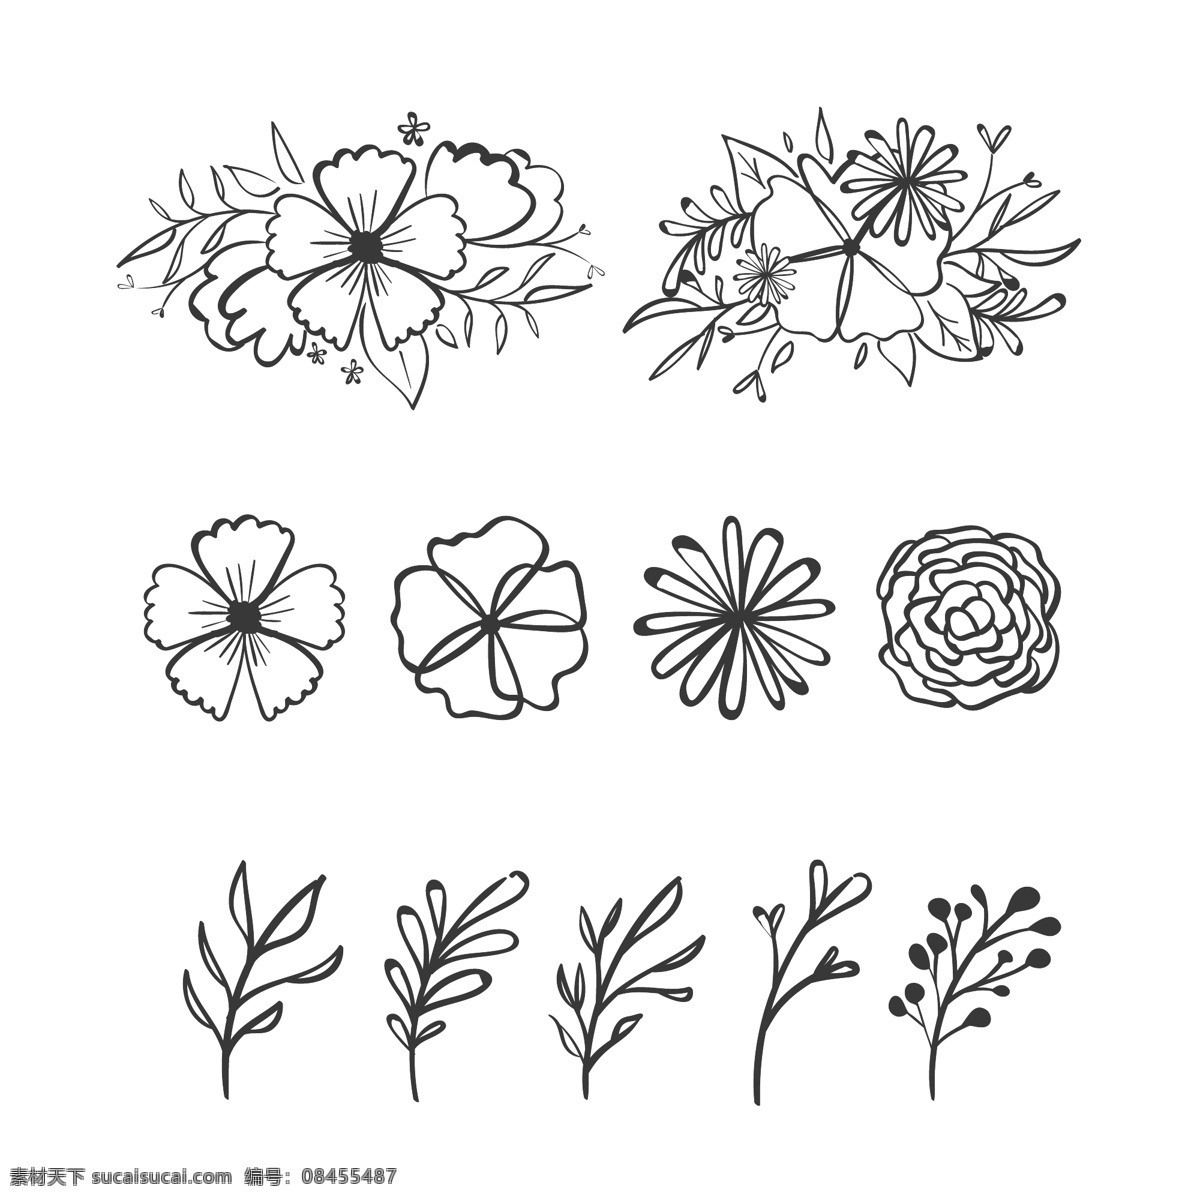 手绘 素描 风格 花卉 元素 叶 自然 线描 线条 装饰性